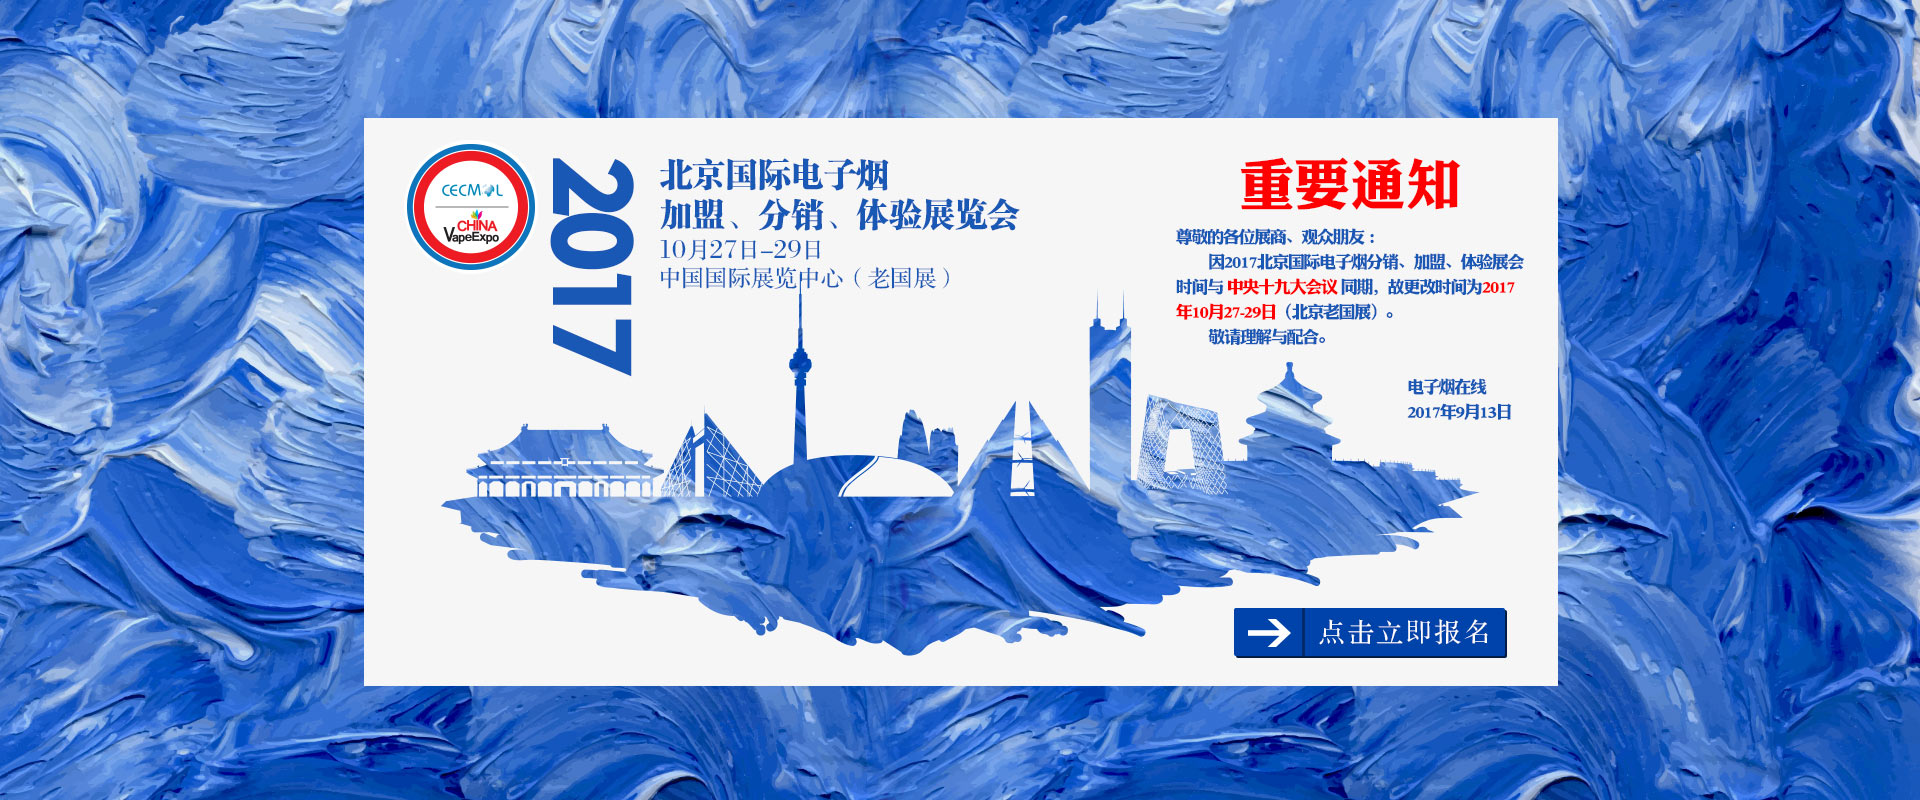 2017北京国际电子烟展览会